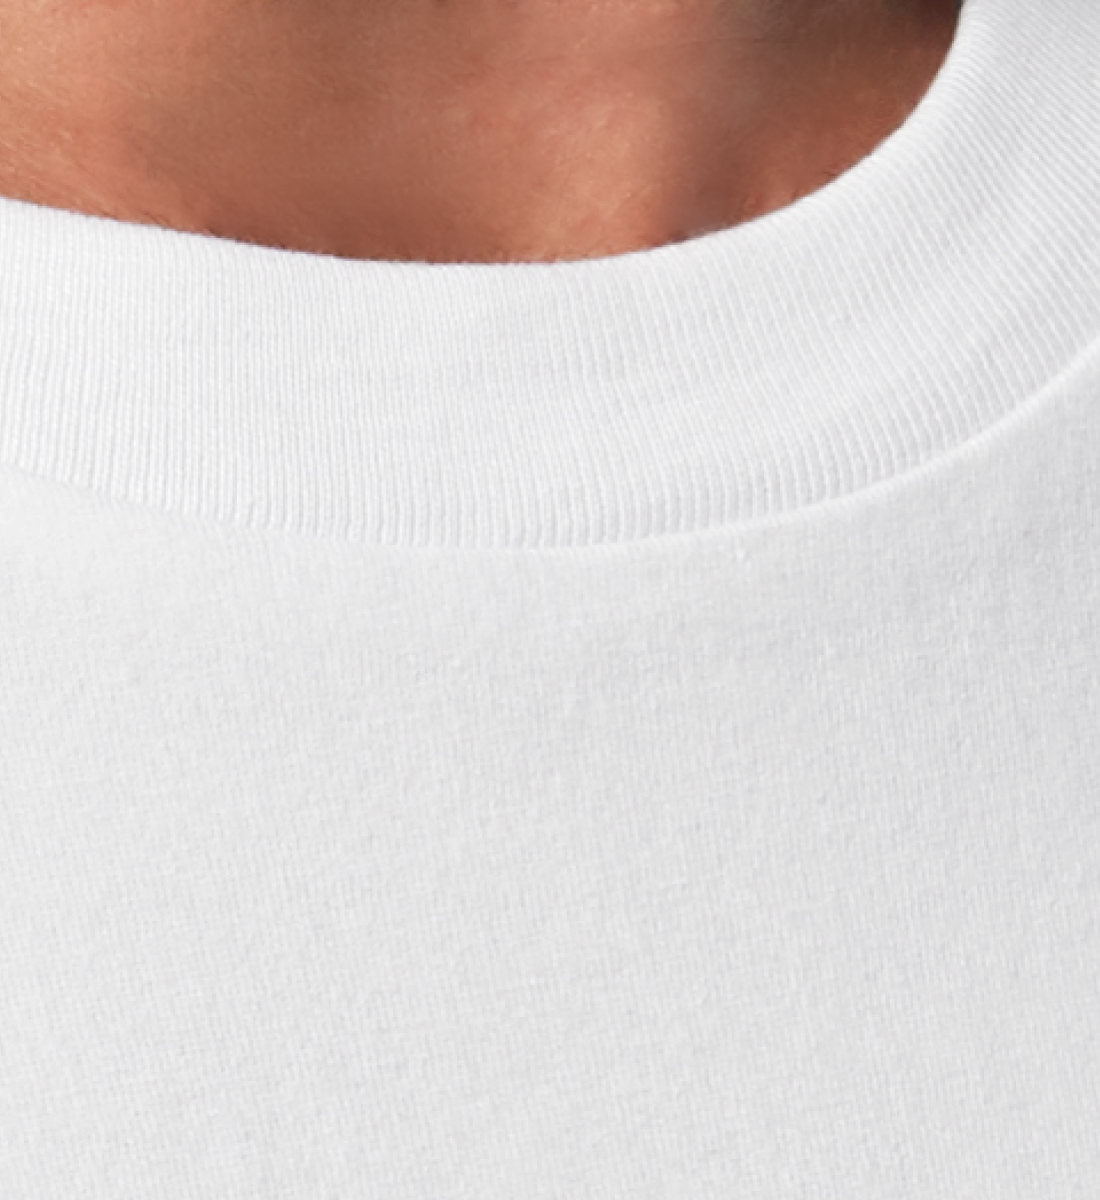 Weißes T-Shirt Unisex für Damen und Herren im Relaxed Fit in weiß bedruckt mit dem Design der my whole life is a lie Kollektion von Roger Rockawoo